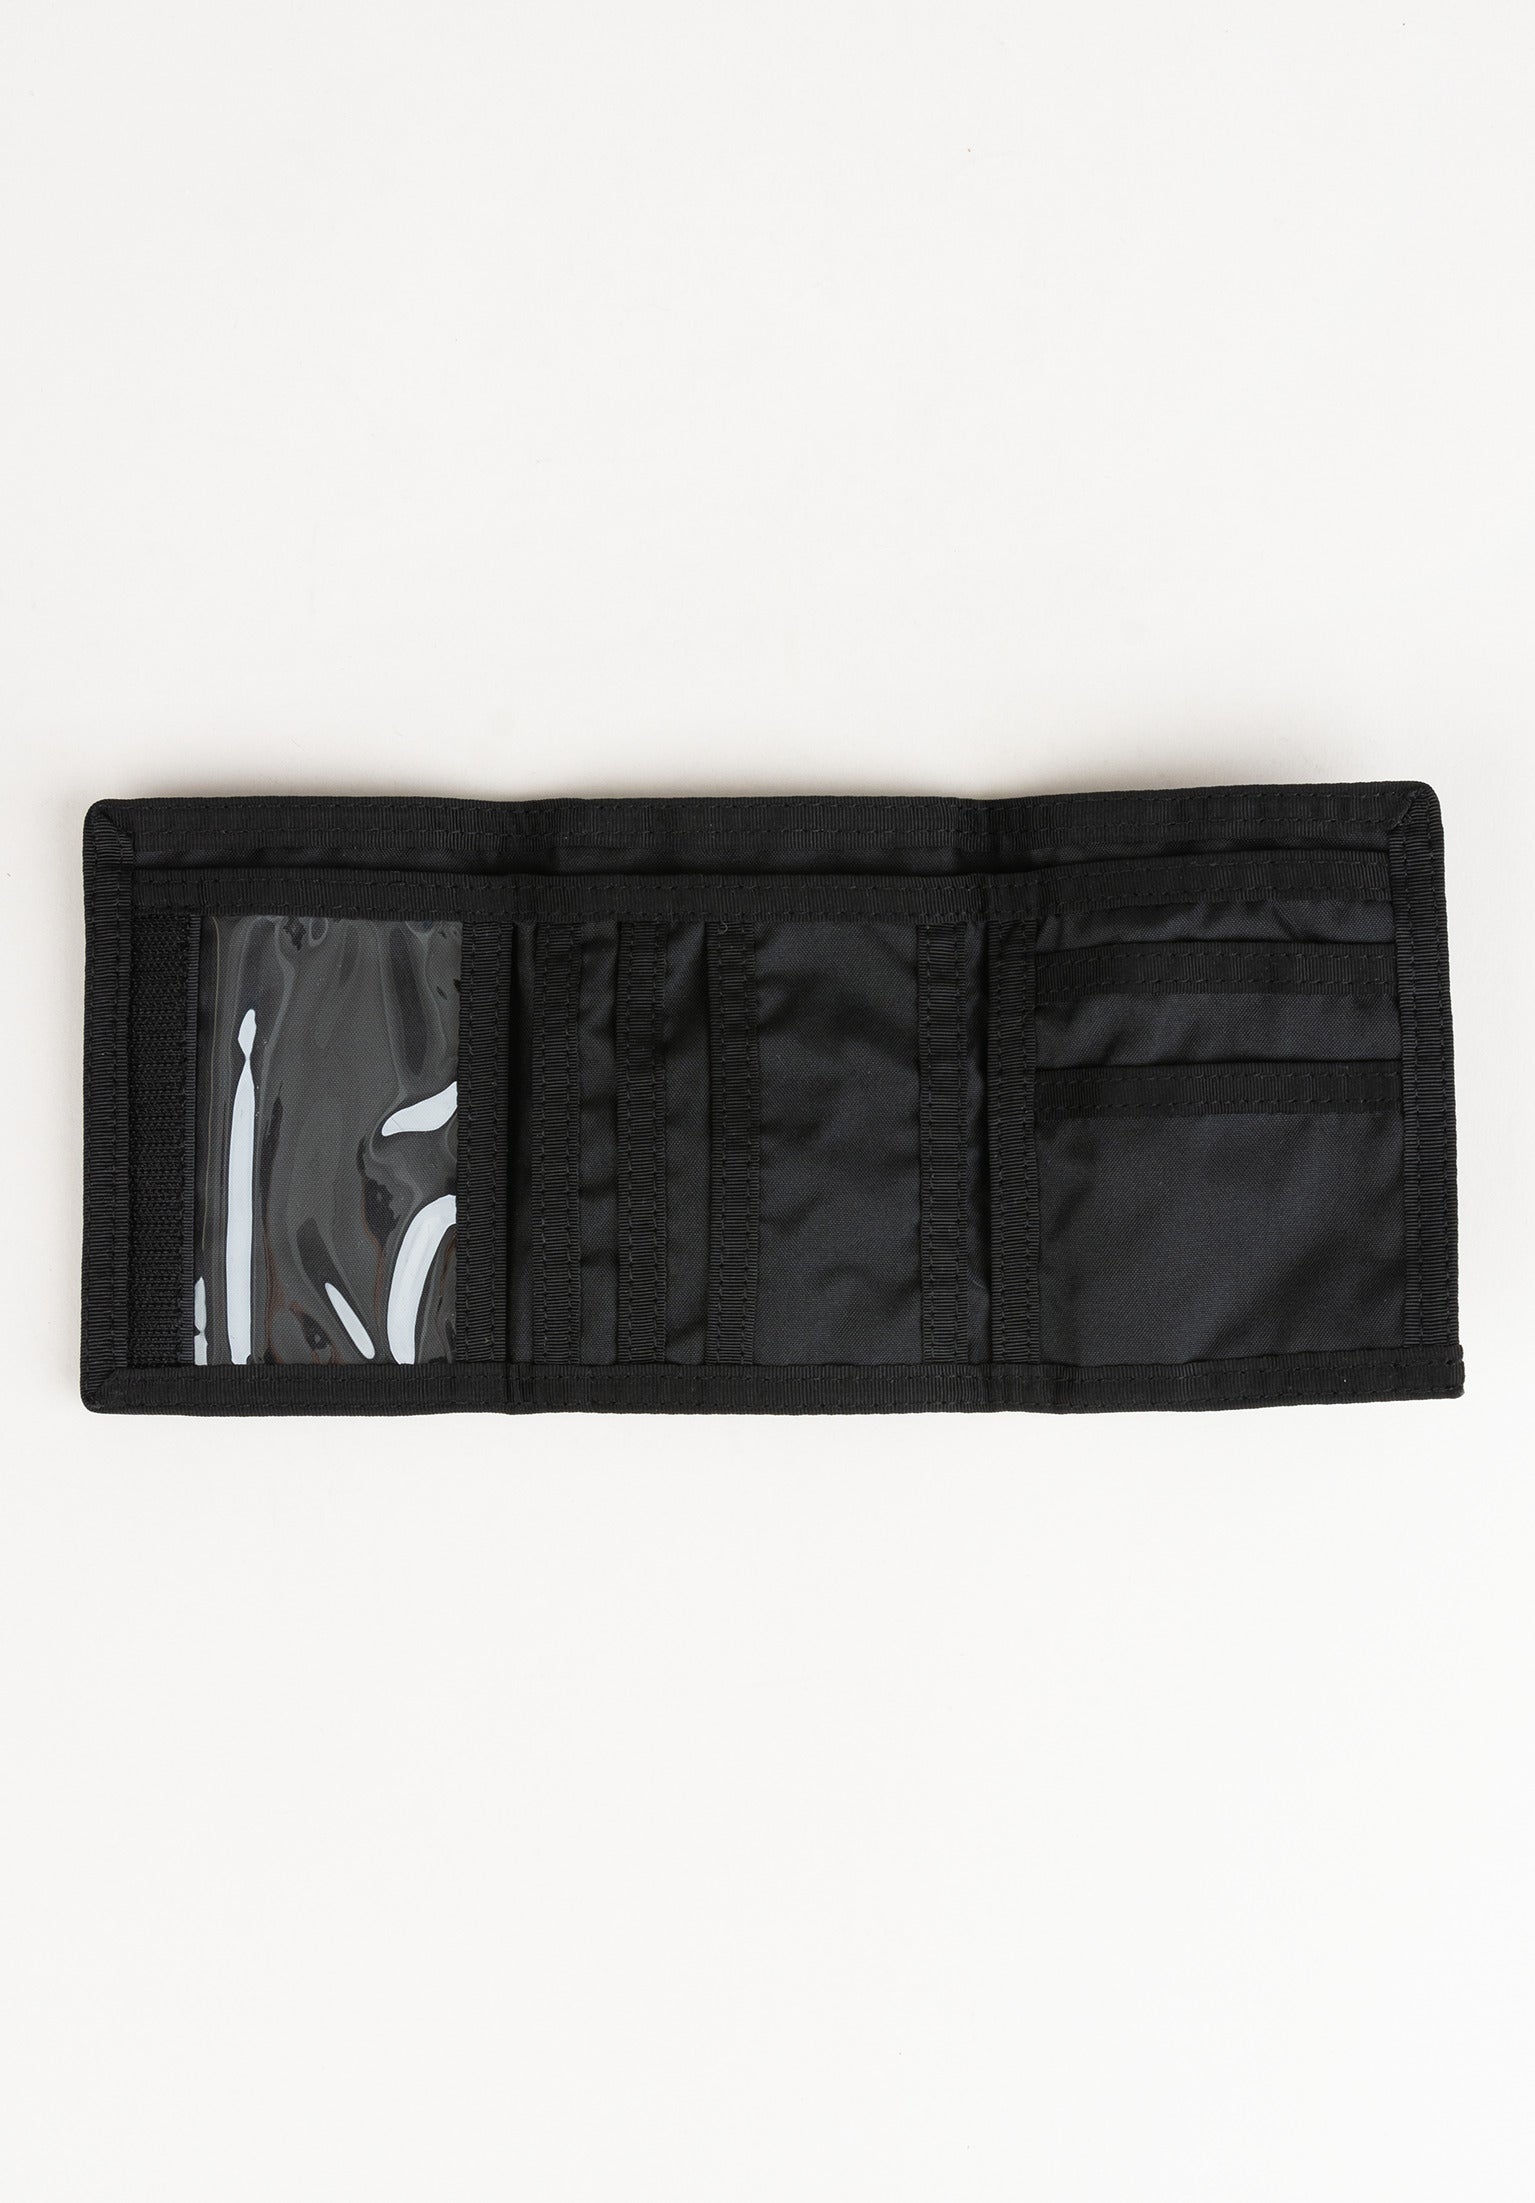 adidas pencil Case Pencils Pack Pouch Bag 100% Authentic | eBay